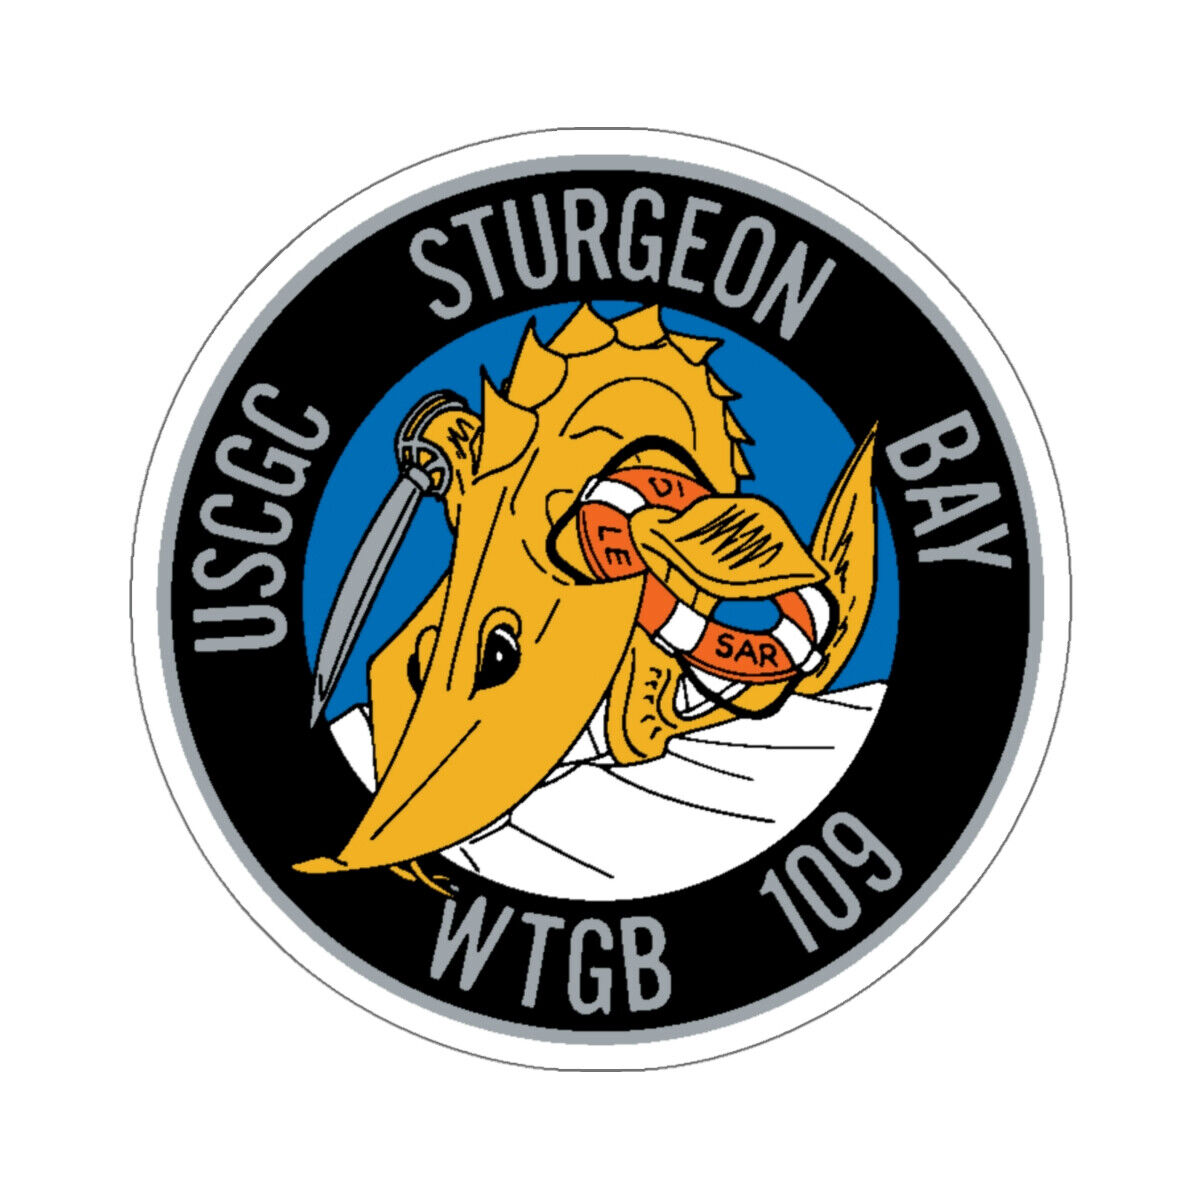 USCGC Sturgeon WTGB 109 (U.S. Coast Guard) STICKER Vinyl Die-Cut Decal